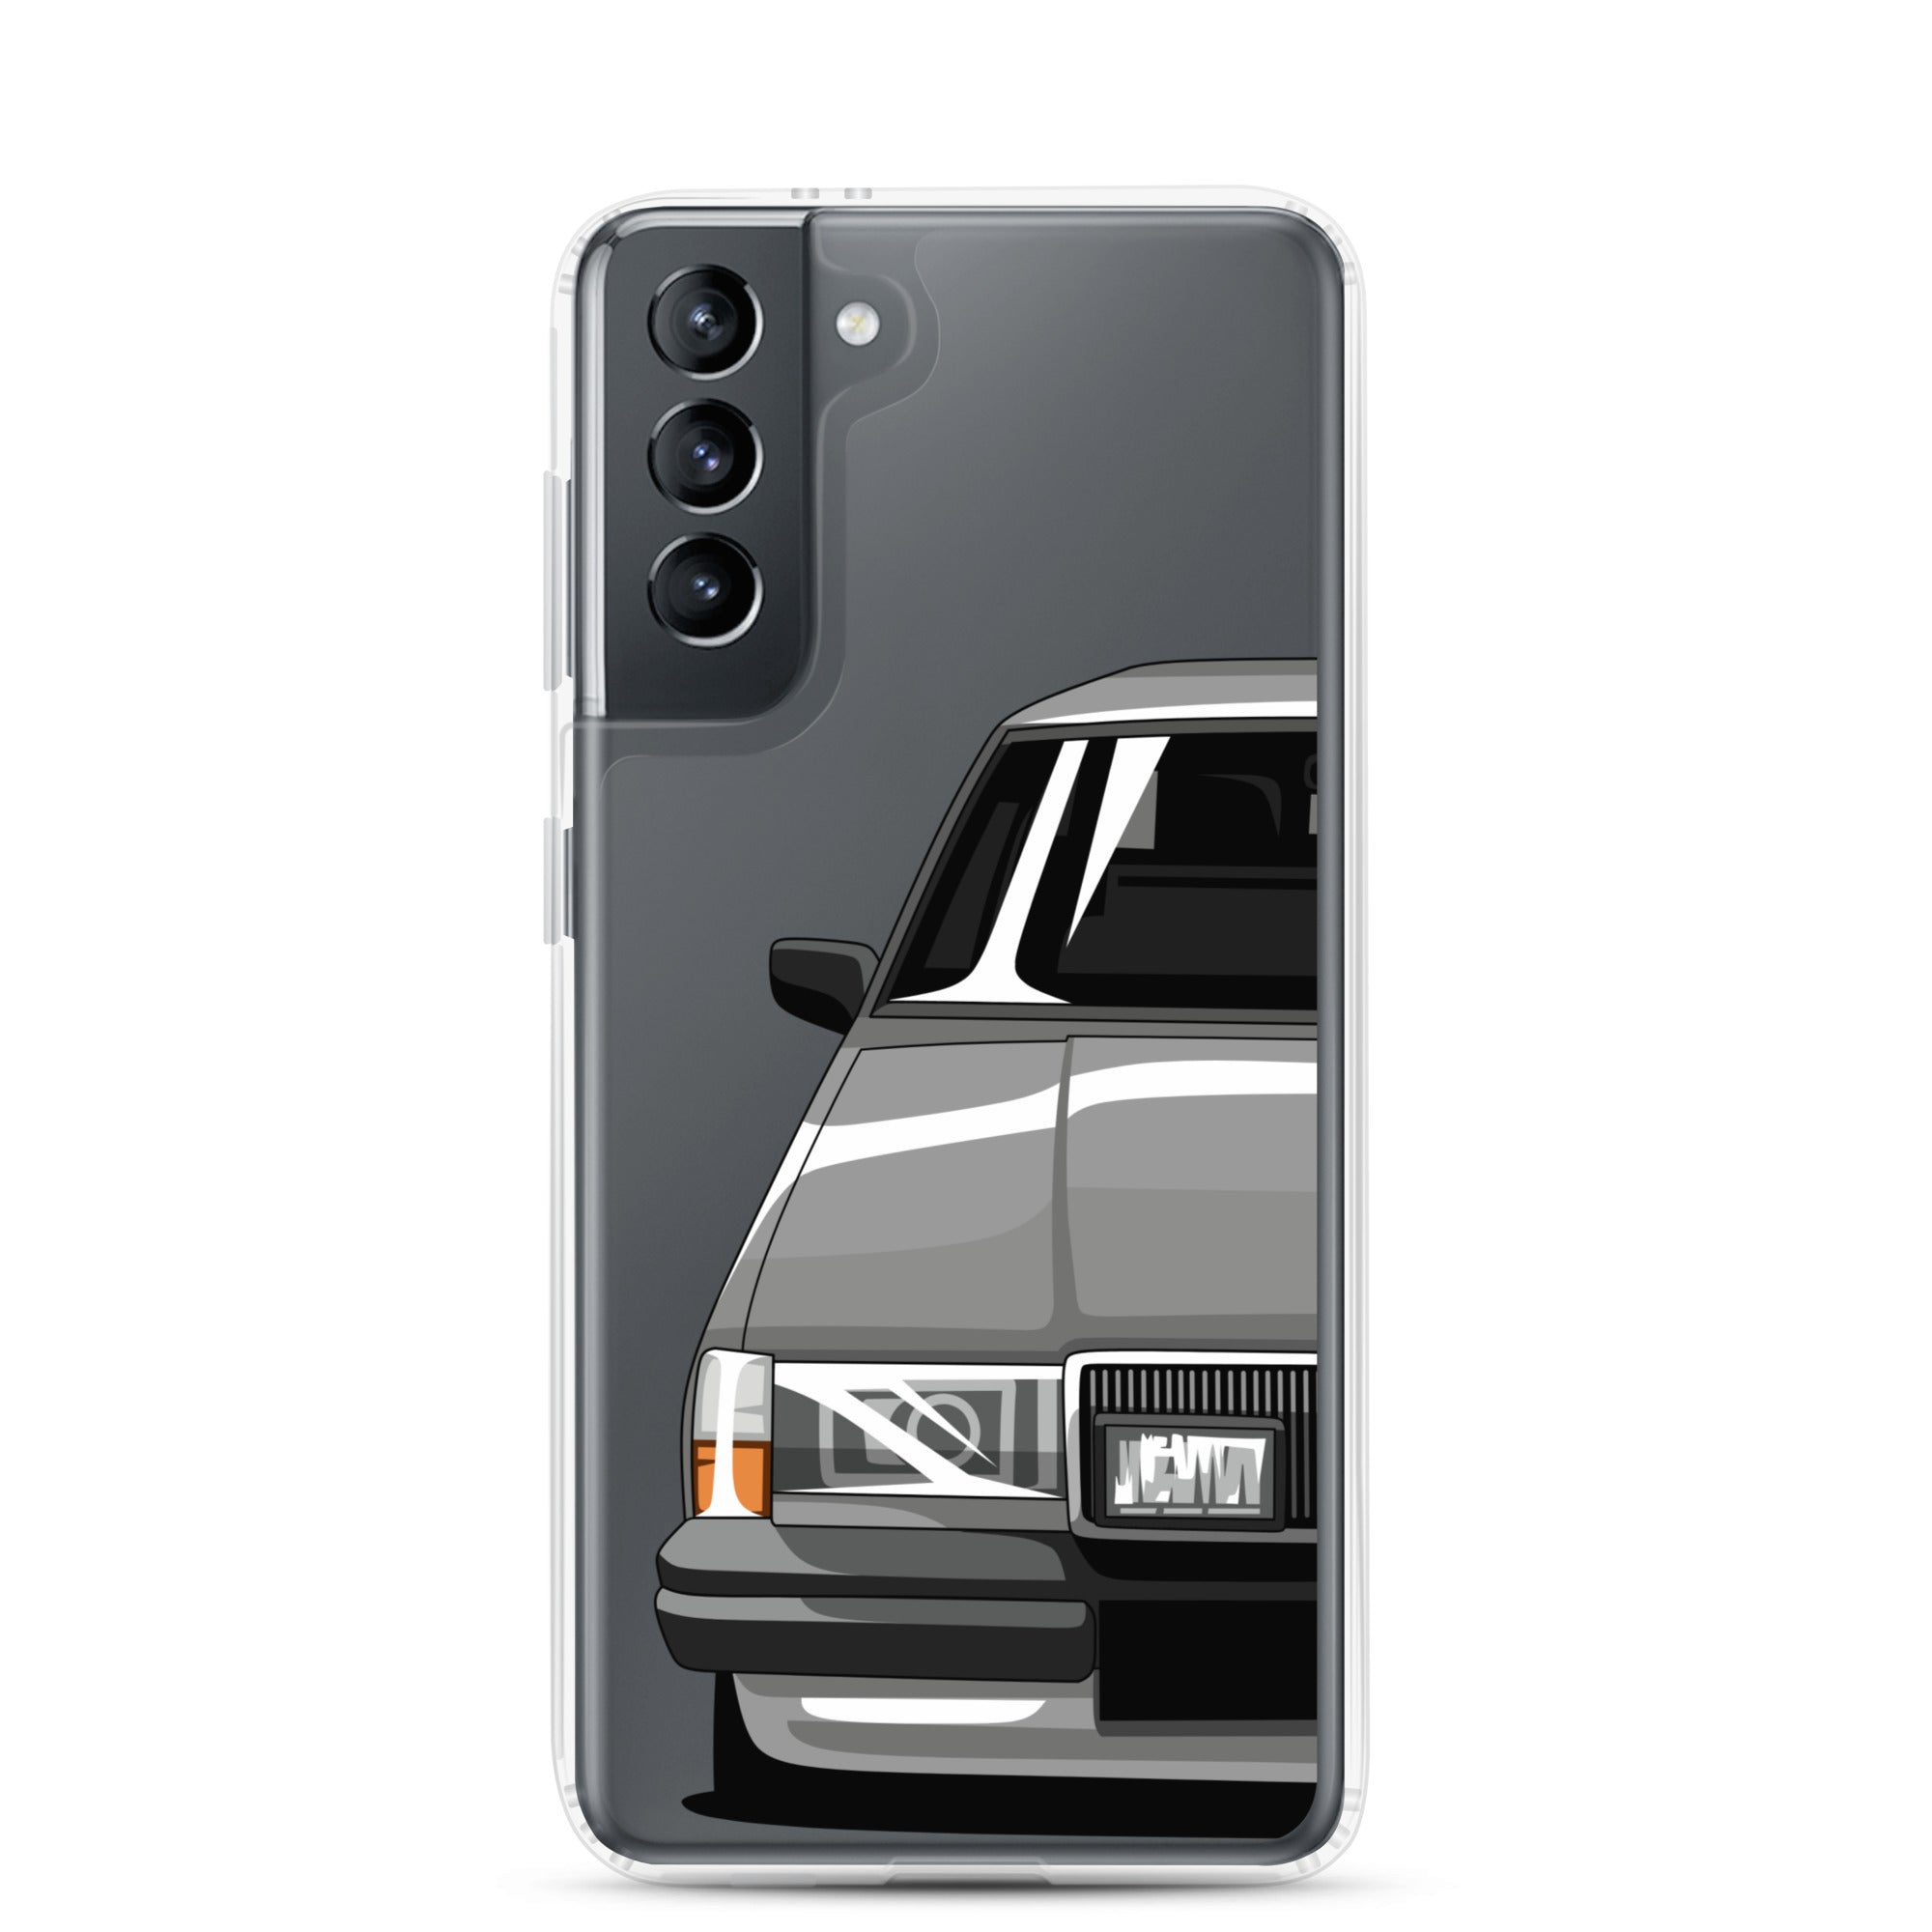 Din bil/lastbil/motorcykel - Samsung Personligt mobilskal (genomskinligt)